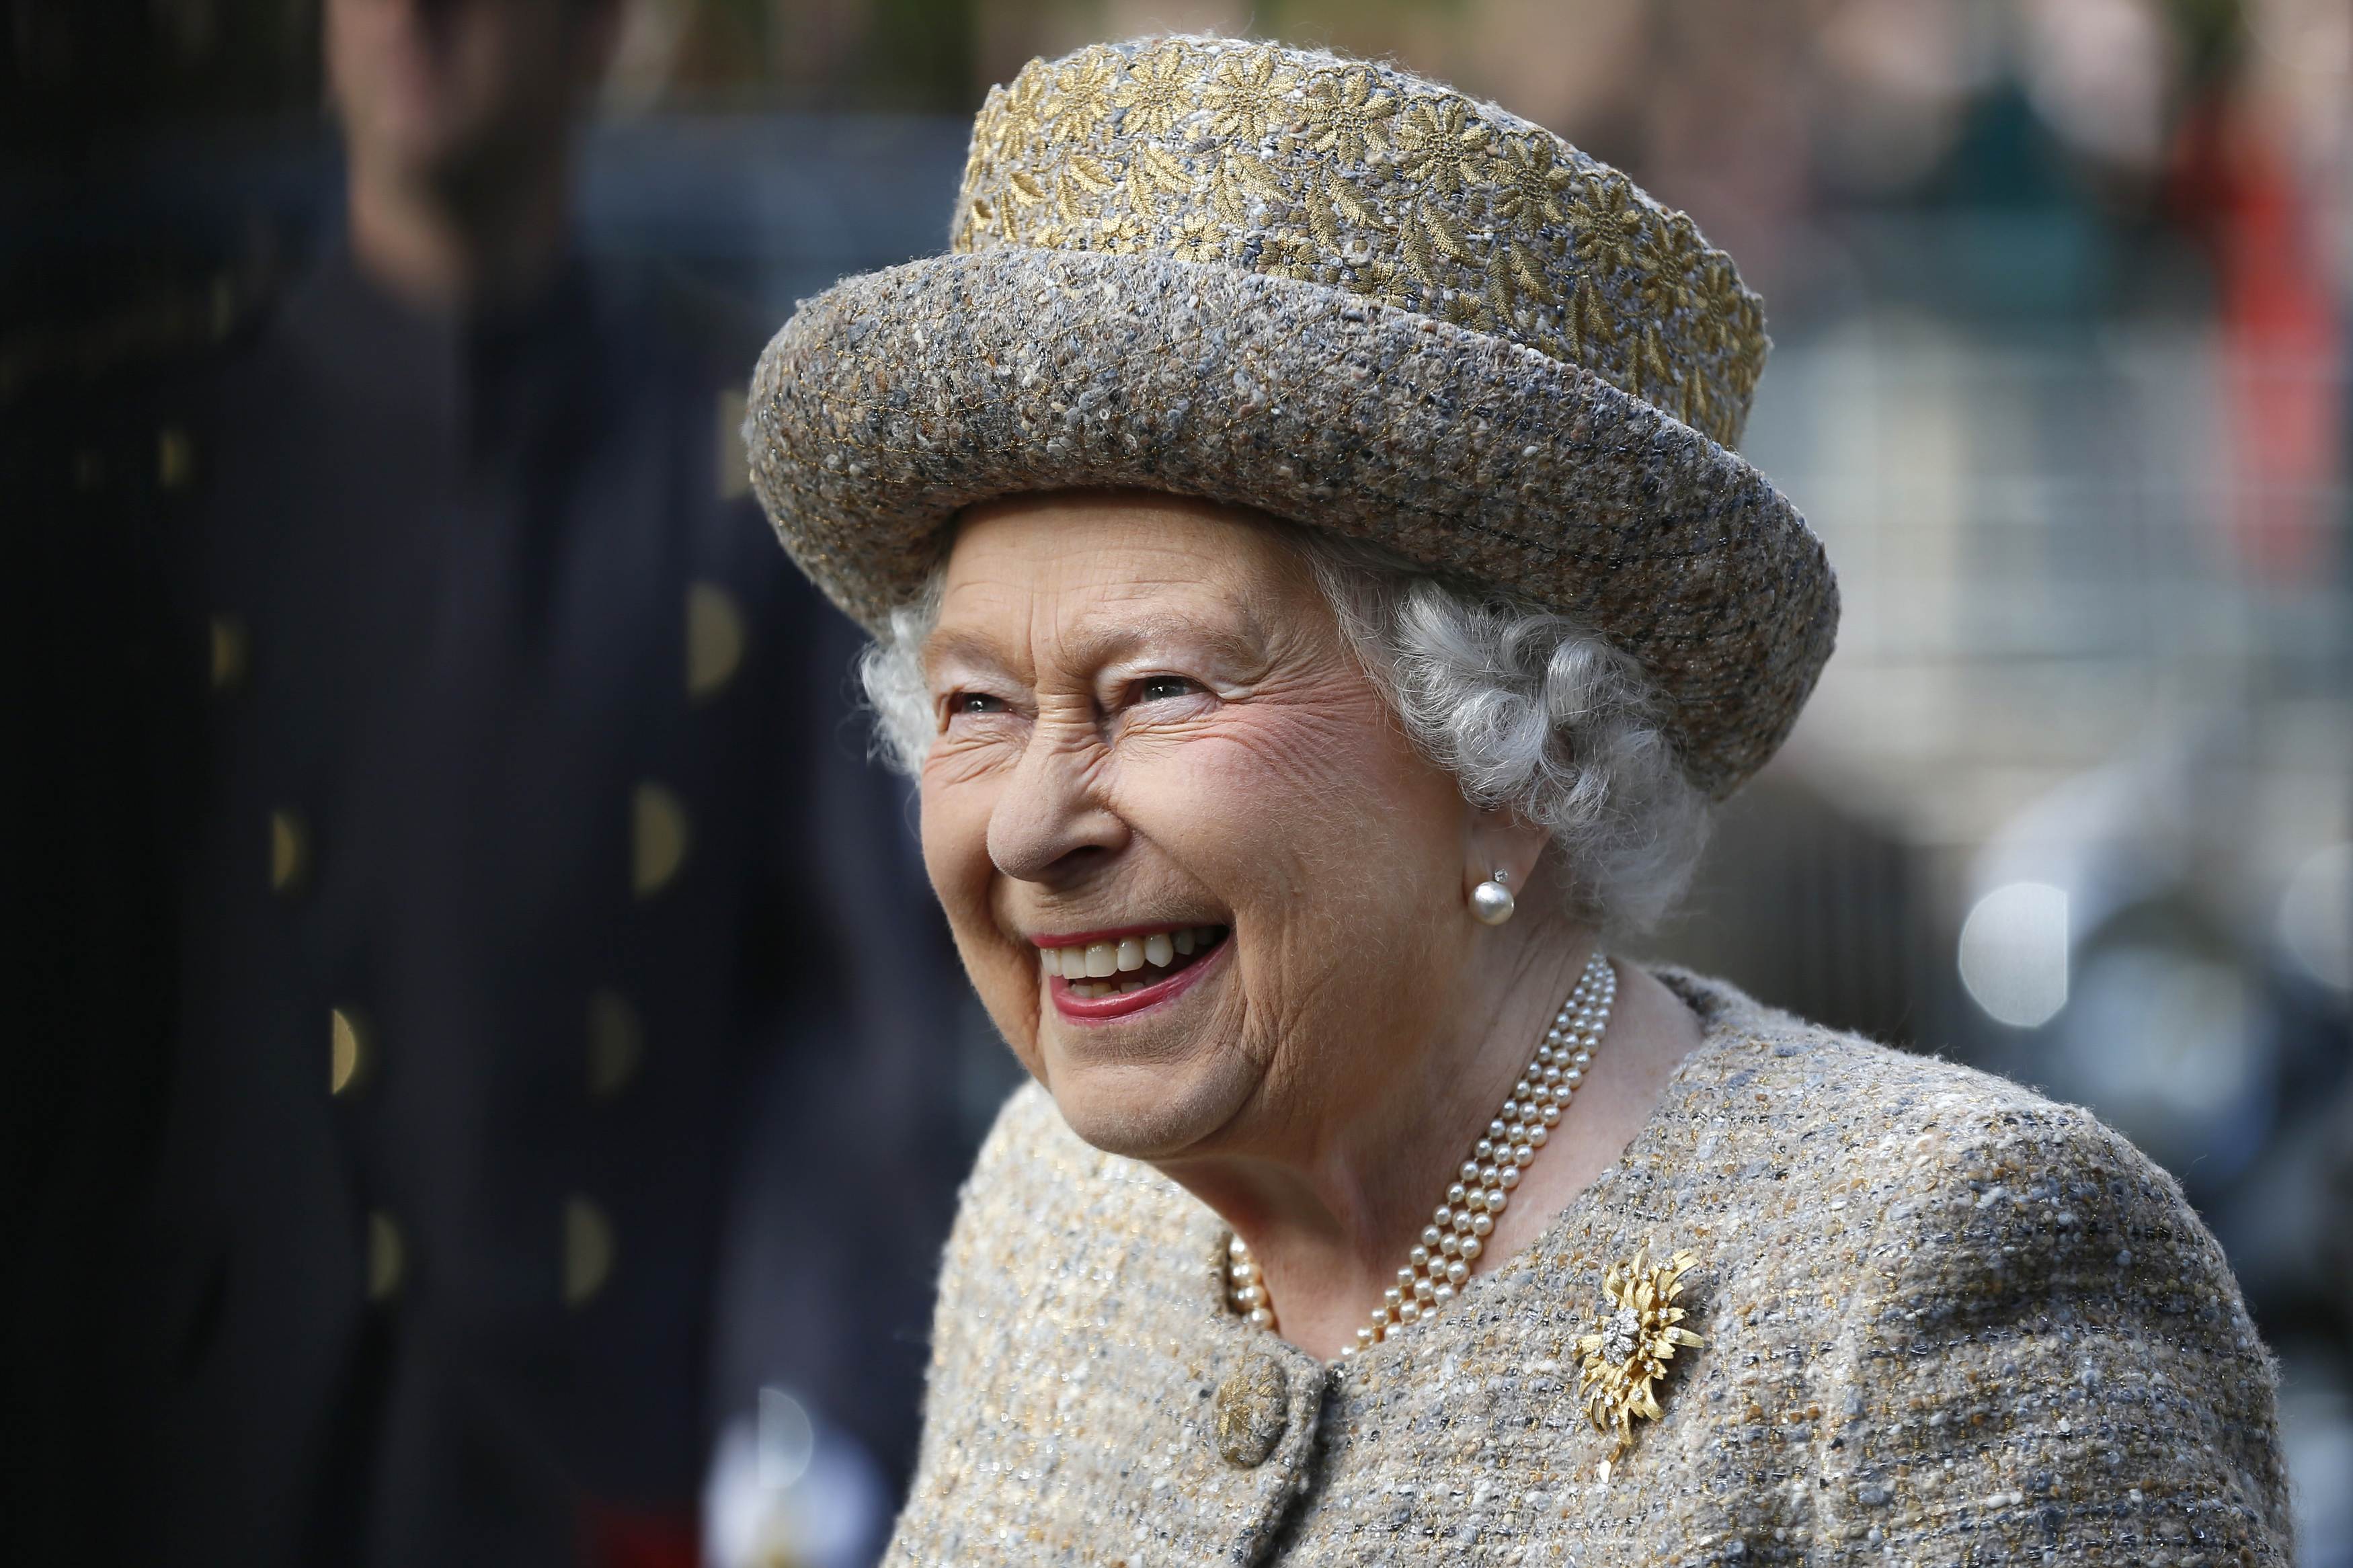 Königin Elizabeth II. lächelt, als sie vor der Eröffnung des Flanders' Fields Memorial Garden in der Wellington Barracks am 6. November 2014 in London, England ankommt | Quelle: Getty Images